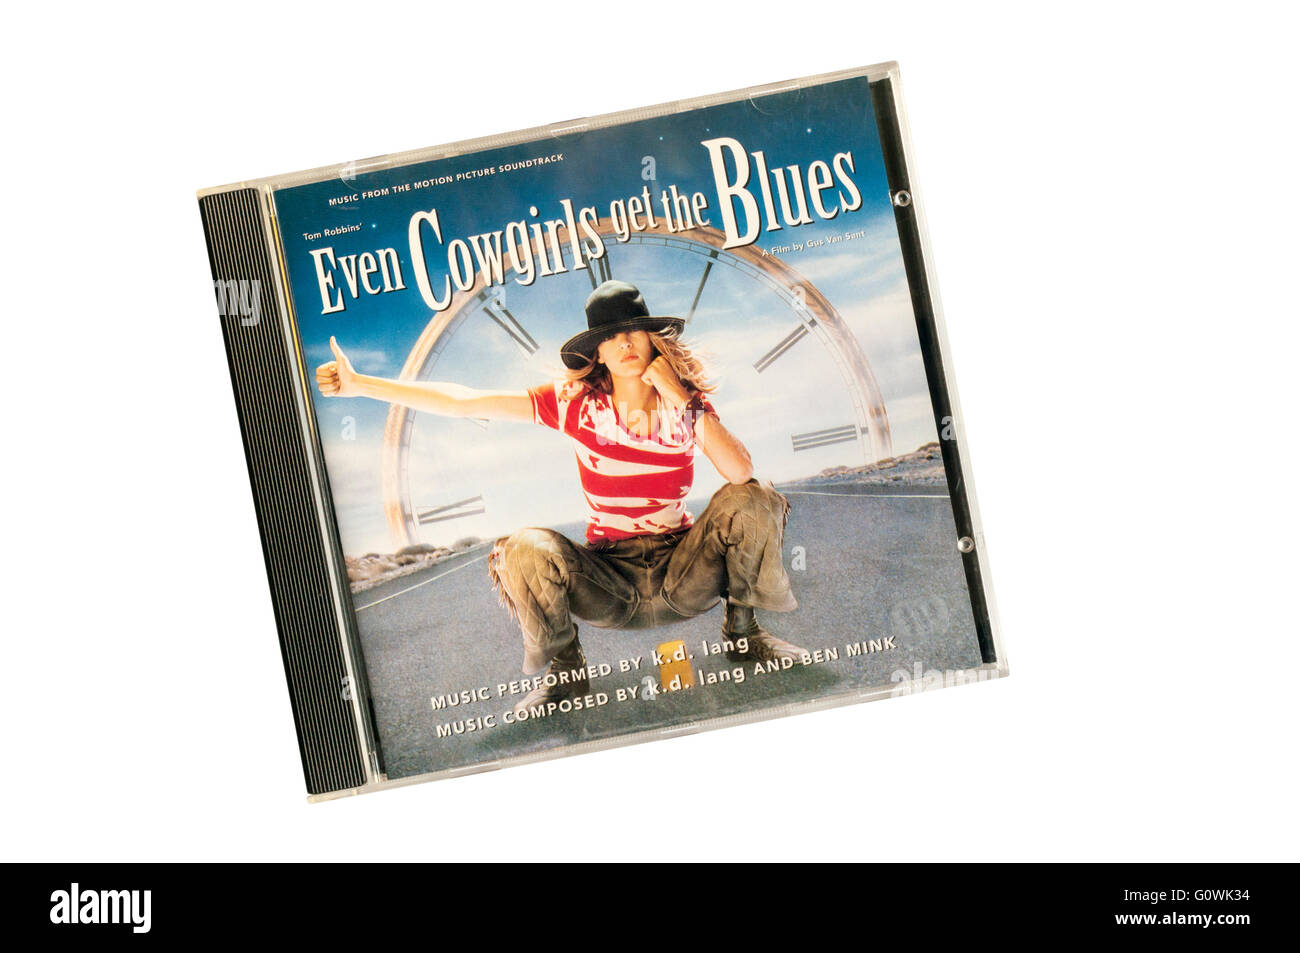 Even Cowgirls Get the Blues était k.d. lang's soundtrack à l'adaptation de Tom Robbins' roman du même nom. Publié en 1993. Banque D'Images